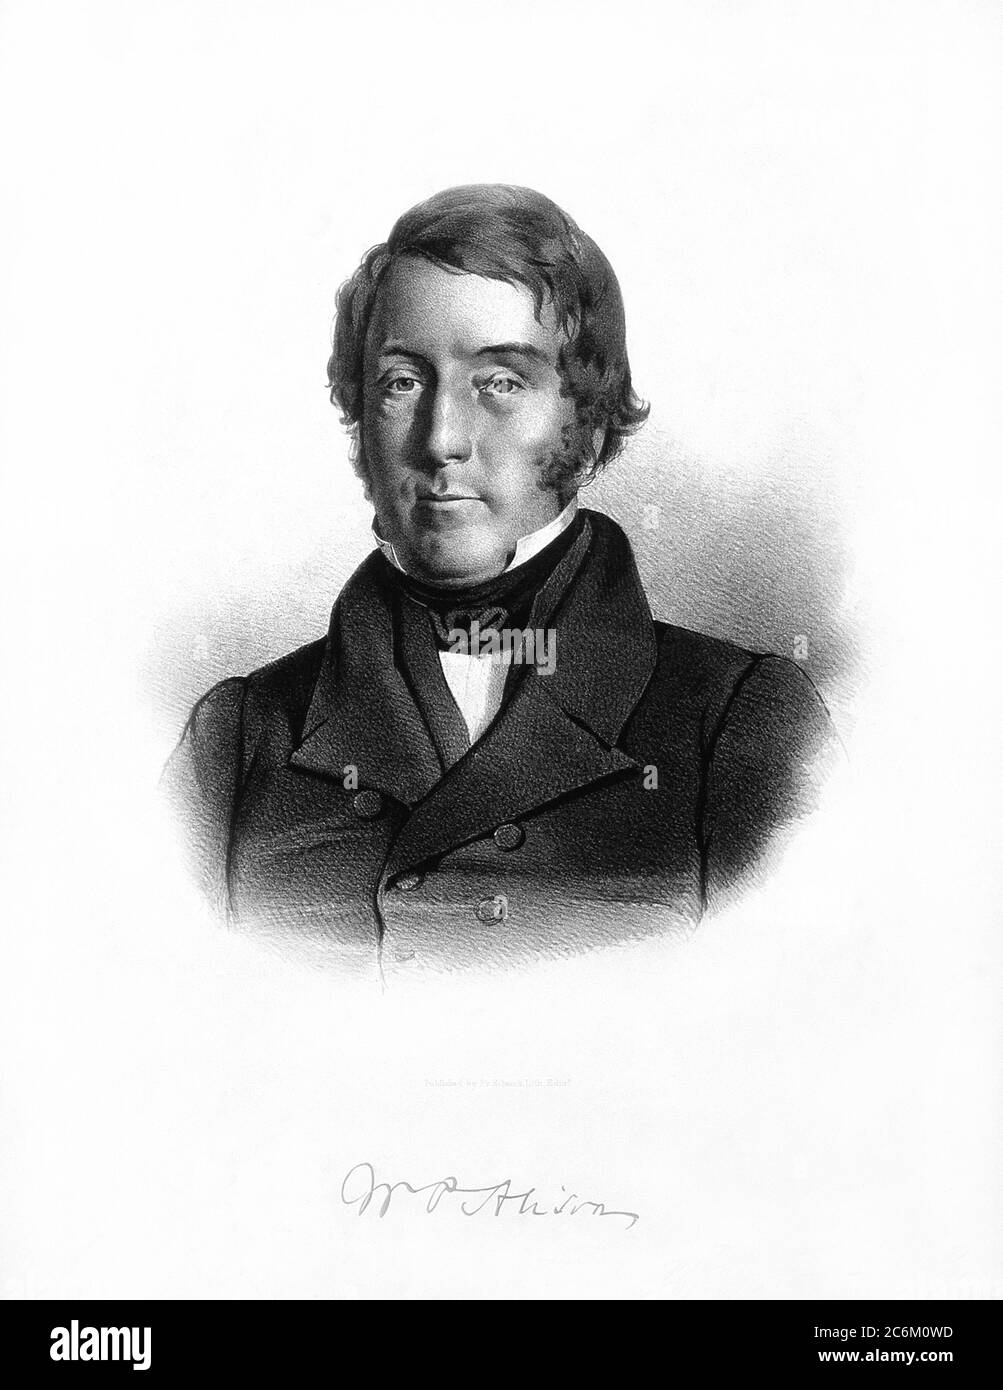 1840 c, GROSSBRITANNIEN : der britische Arzt, Sozialreformer und Philanthropist William Pulteney ALISON ( 1790 - 1859 ). - GESCHICHTE - foto storiche - scienziato - Wissenschaftler - Portrait - ritratto - GRAND BRETAGNA - SCOZIA - SCHOTISH - Scozzese - DOTTORE - MEDICO - MEDICINA - Medizin - SCIENZA - WISSENSCHAFT - SCIENZIATO - FILANTROPO - SOZIALREFORMER - RIFORMATORE SOCIALE - Gravur - Inzisione -- - Archivio GBB Stockfoto